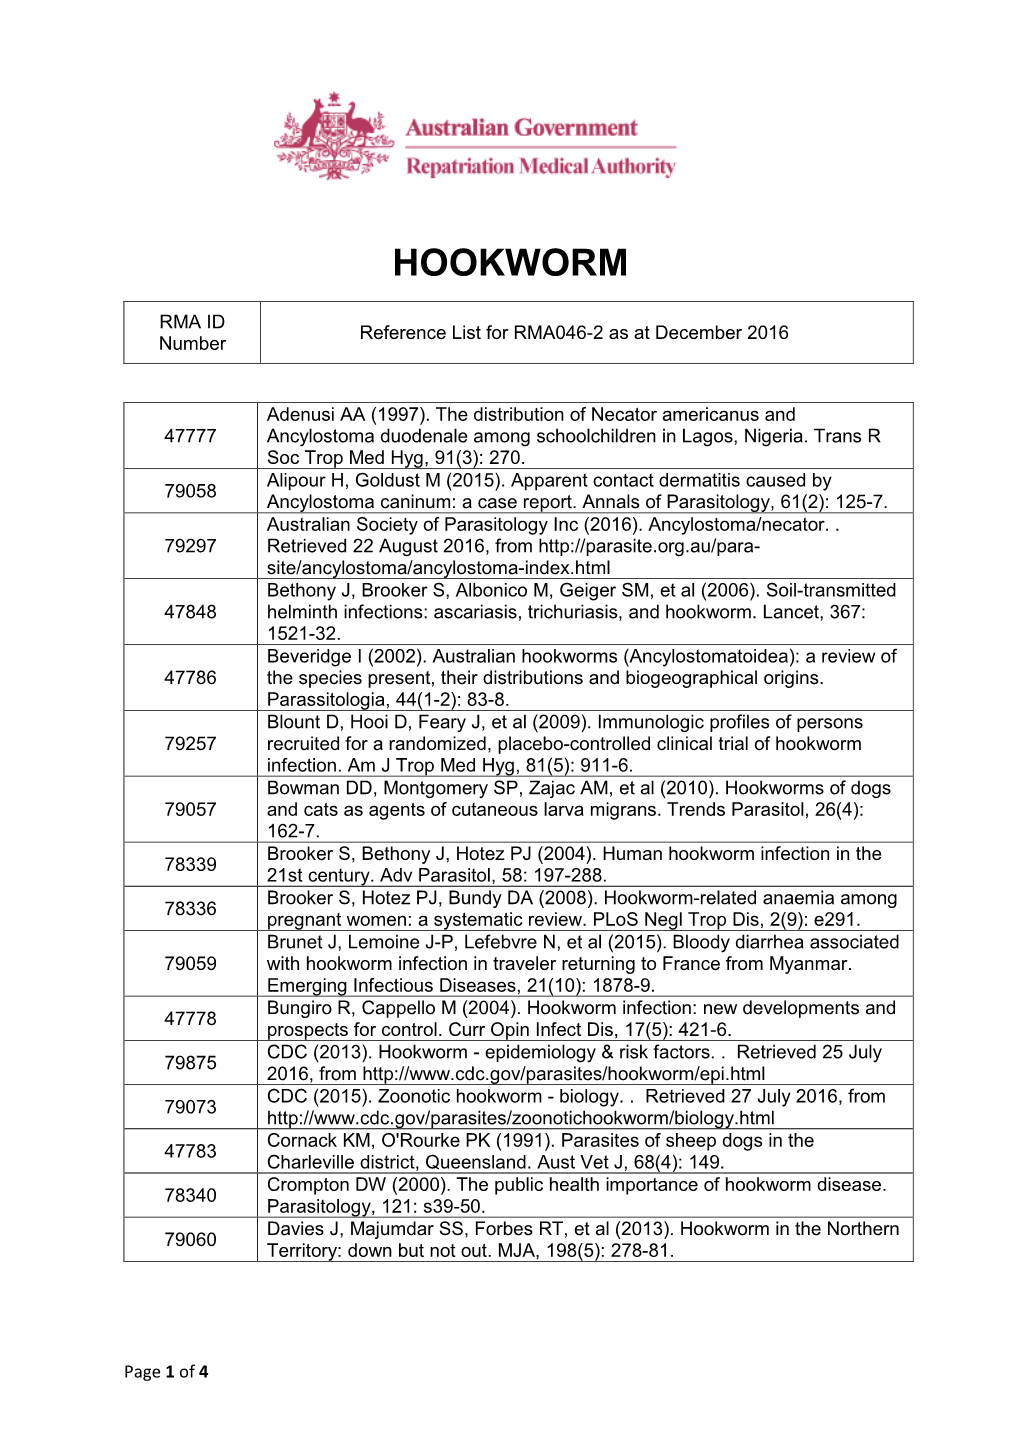 Reference List Concerning Hookworm